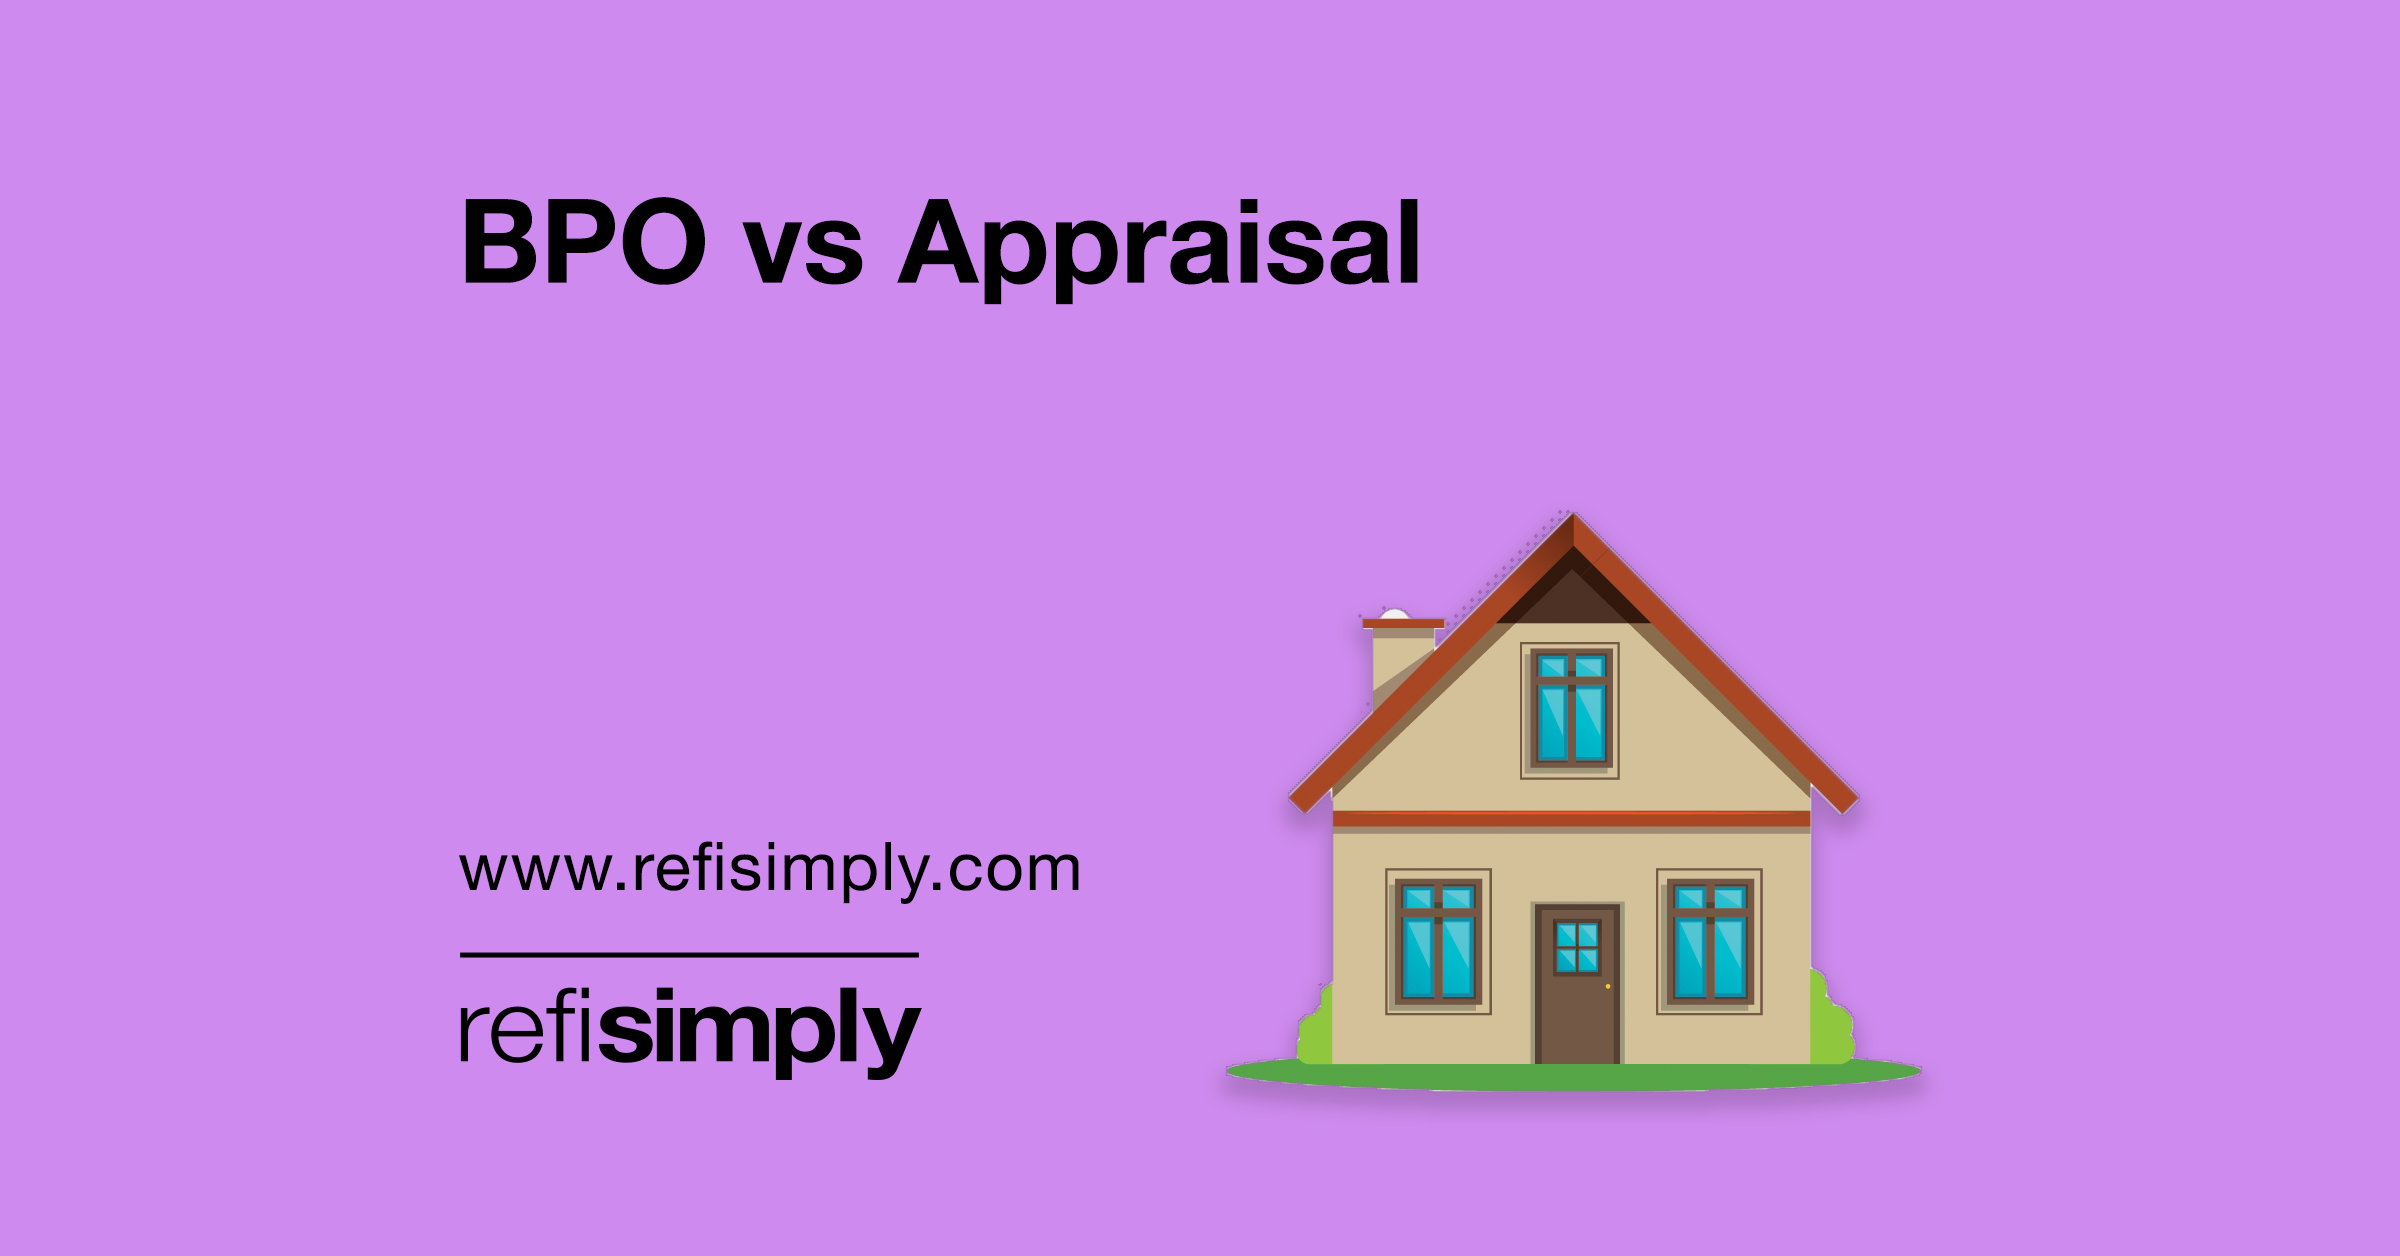 BPO vs Appraisal